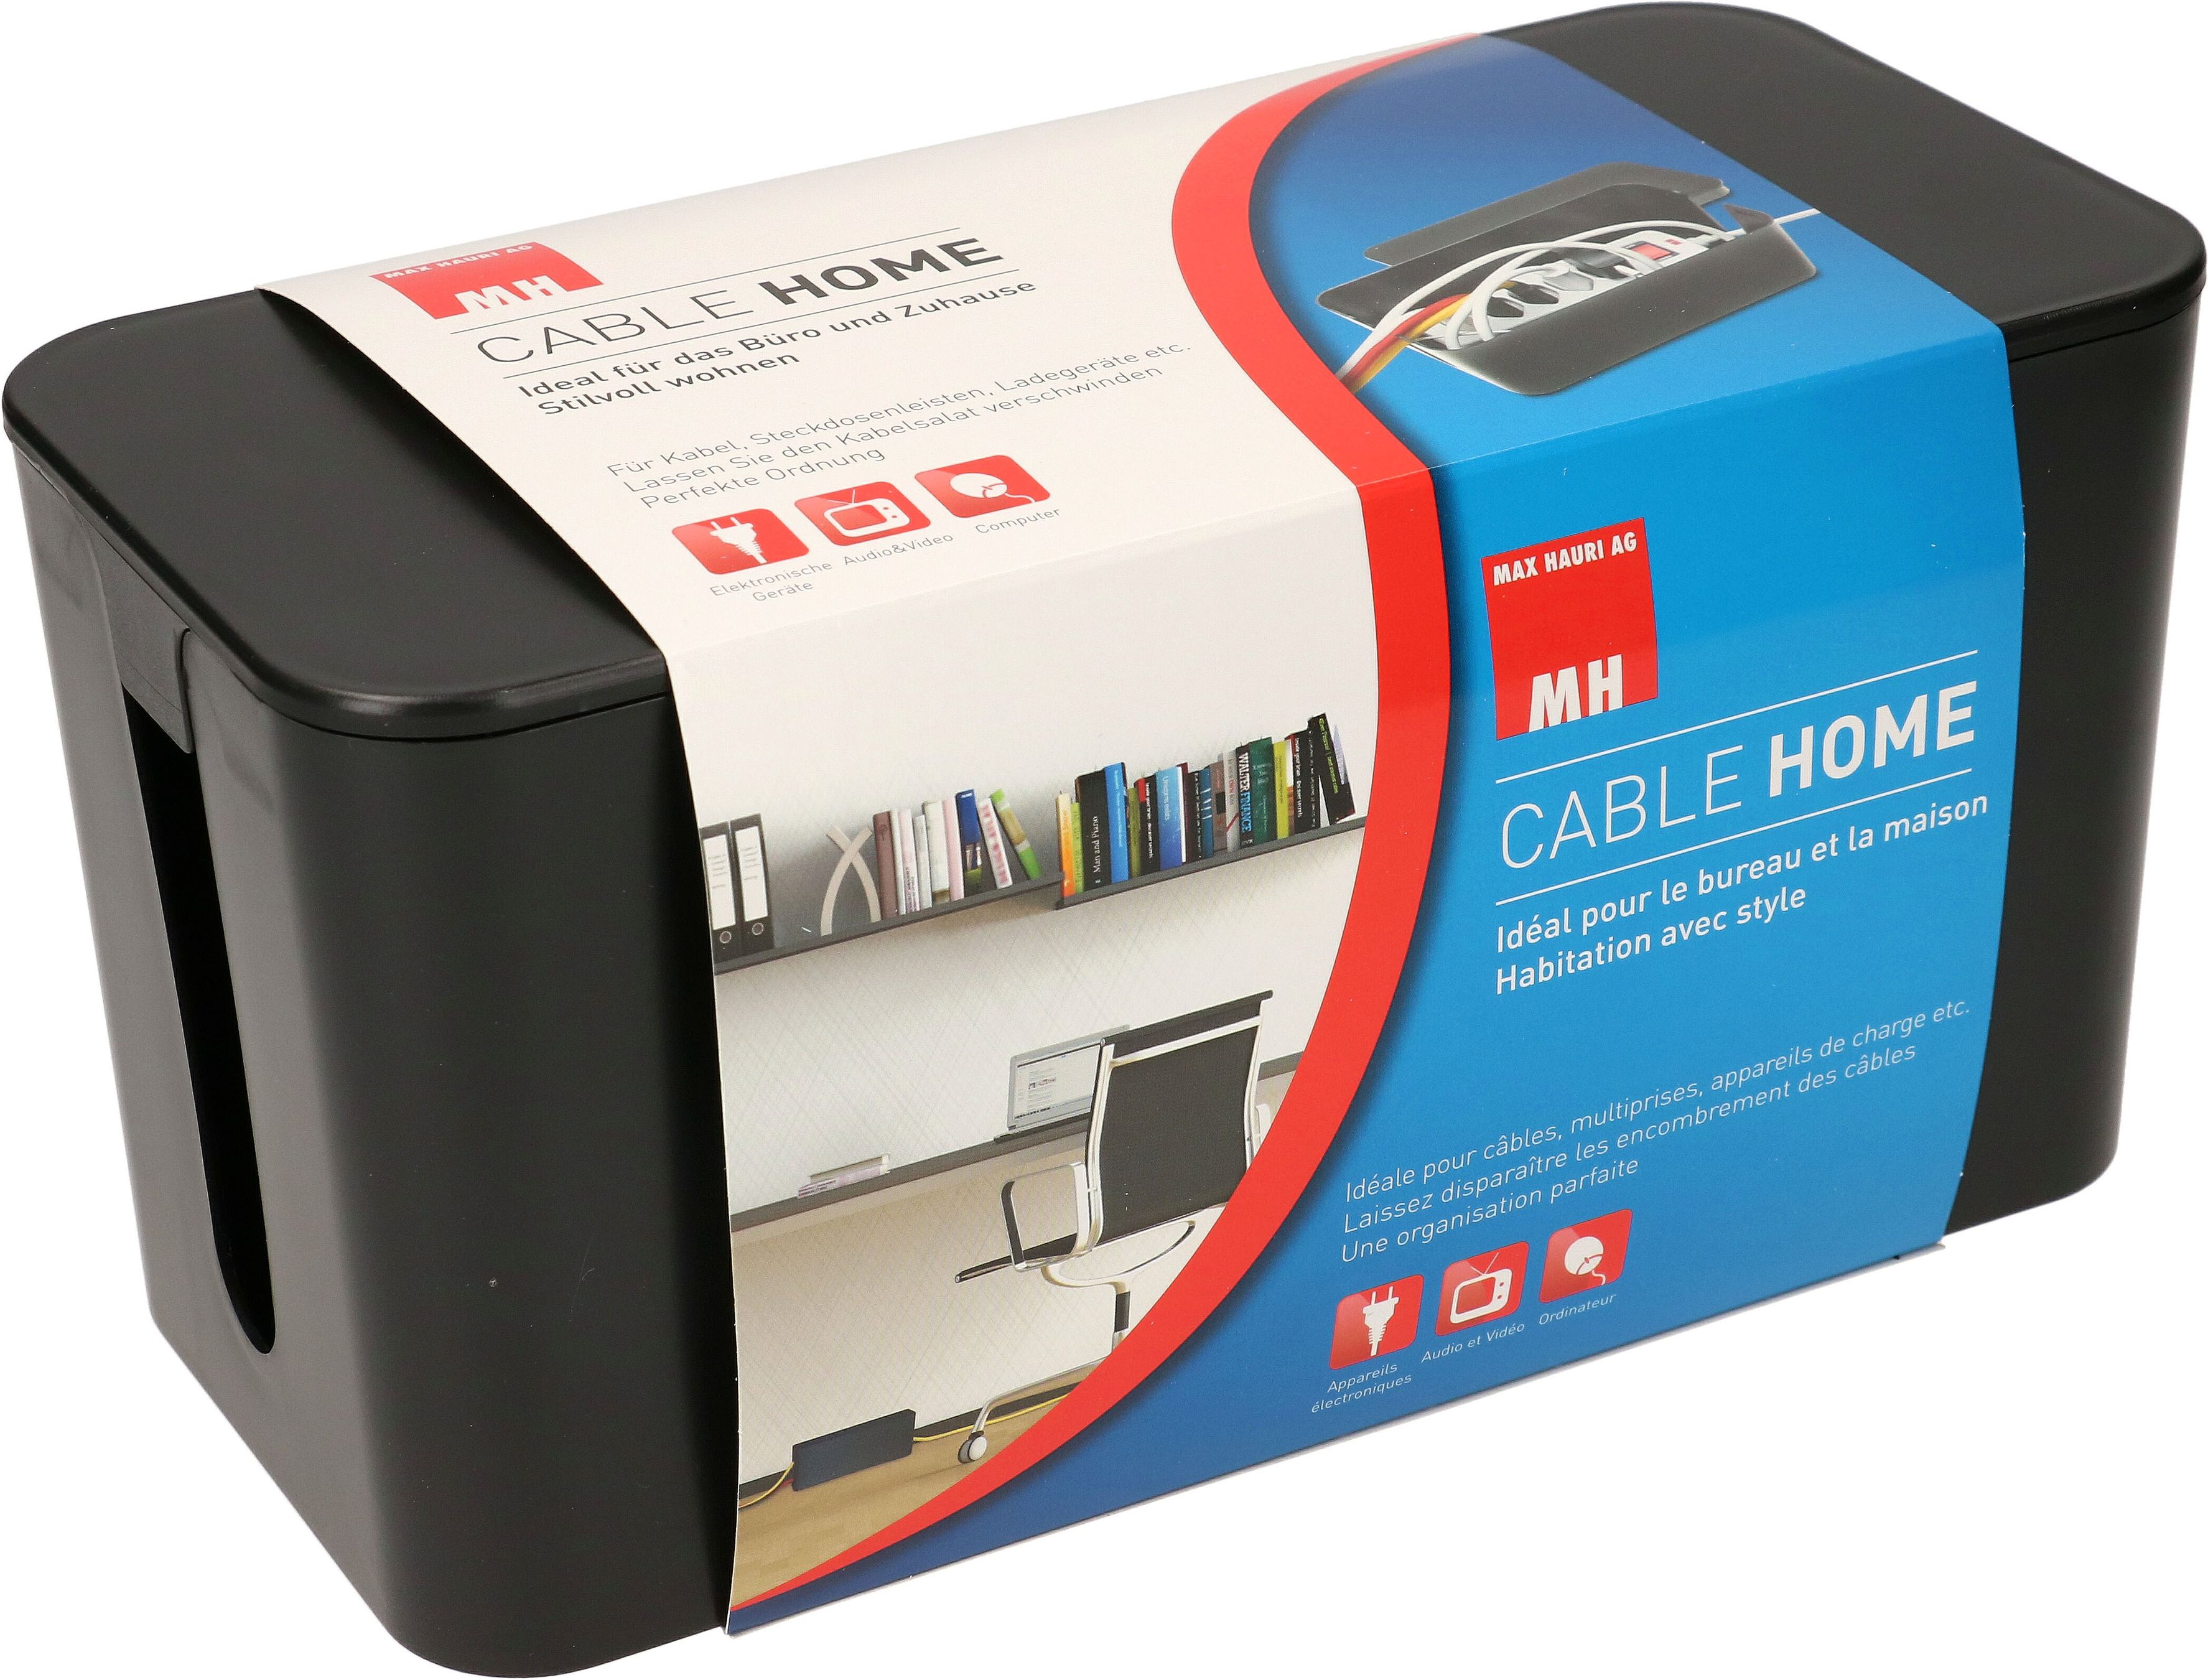 Cable Facility Box Cable Home piccolo nero